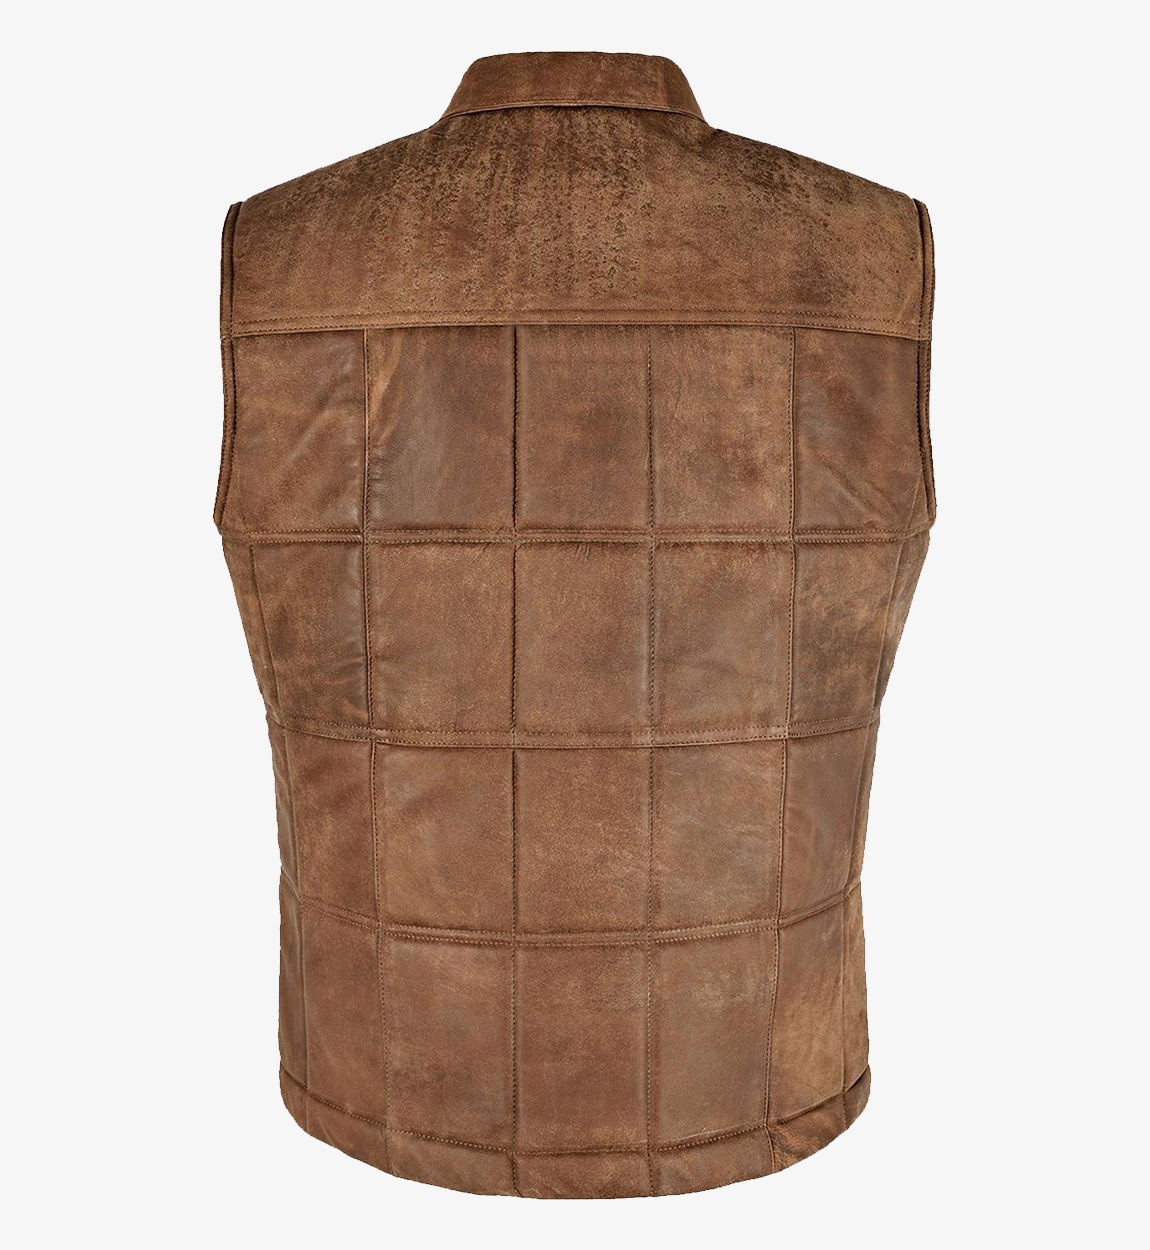 Vintage Body Warmer Men's Brown Leather Vest